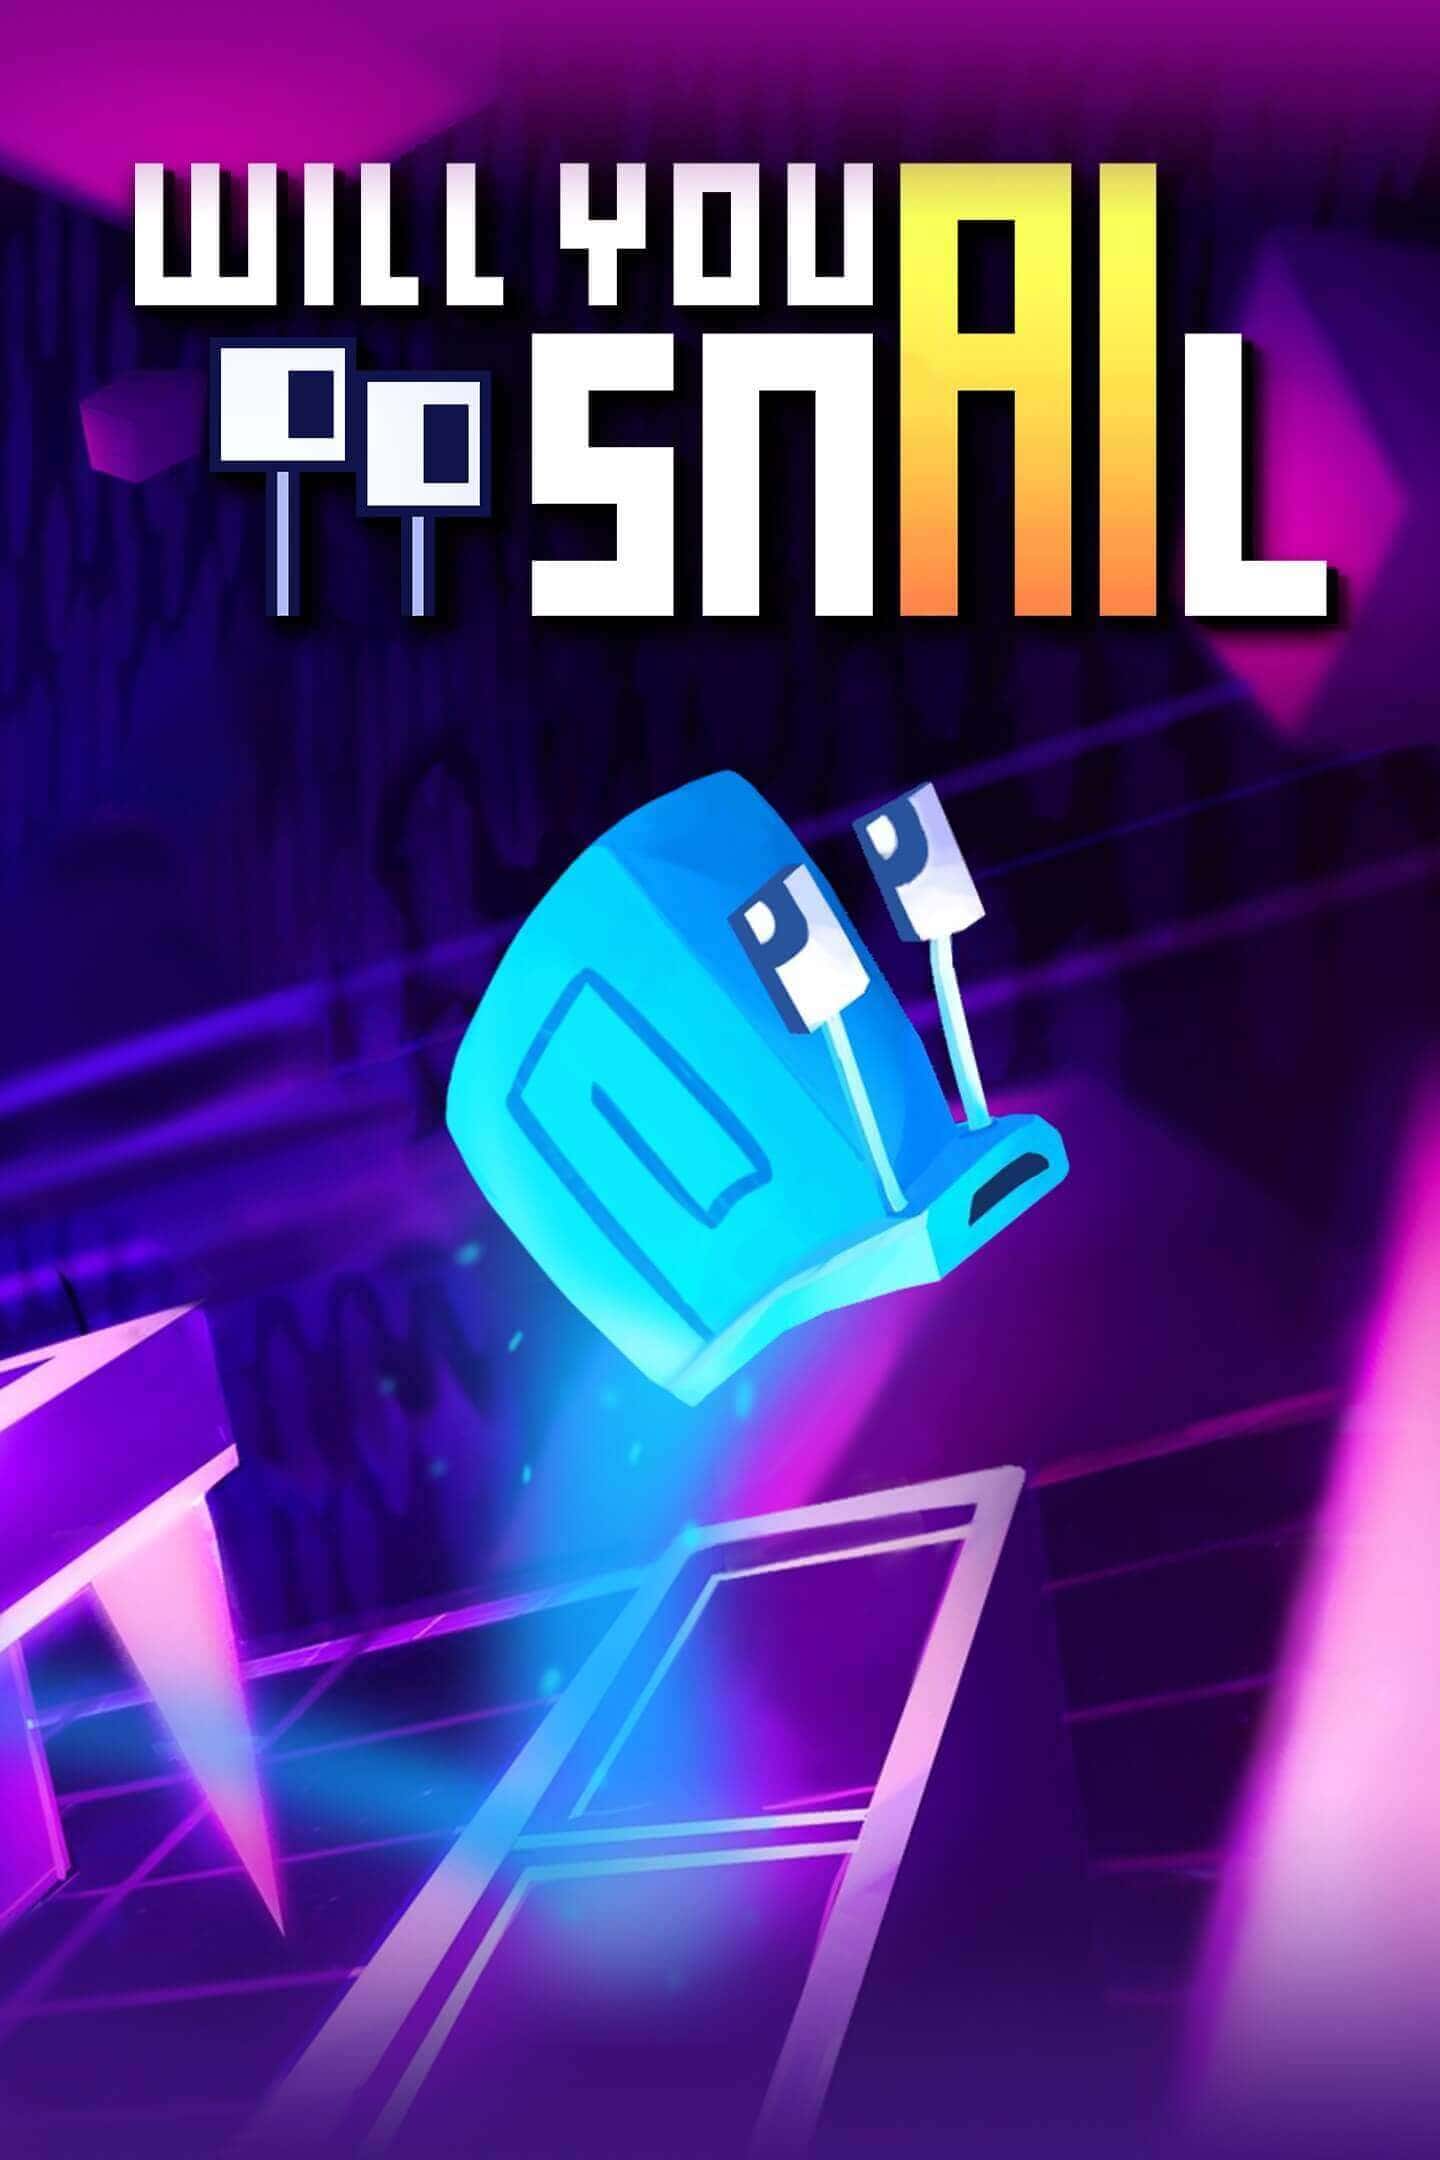 معرفی بازی will you snail،کم حجم و مناسب برای سیستم های ضعیف